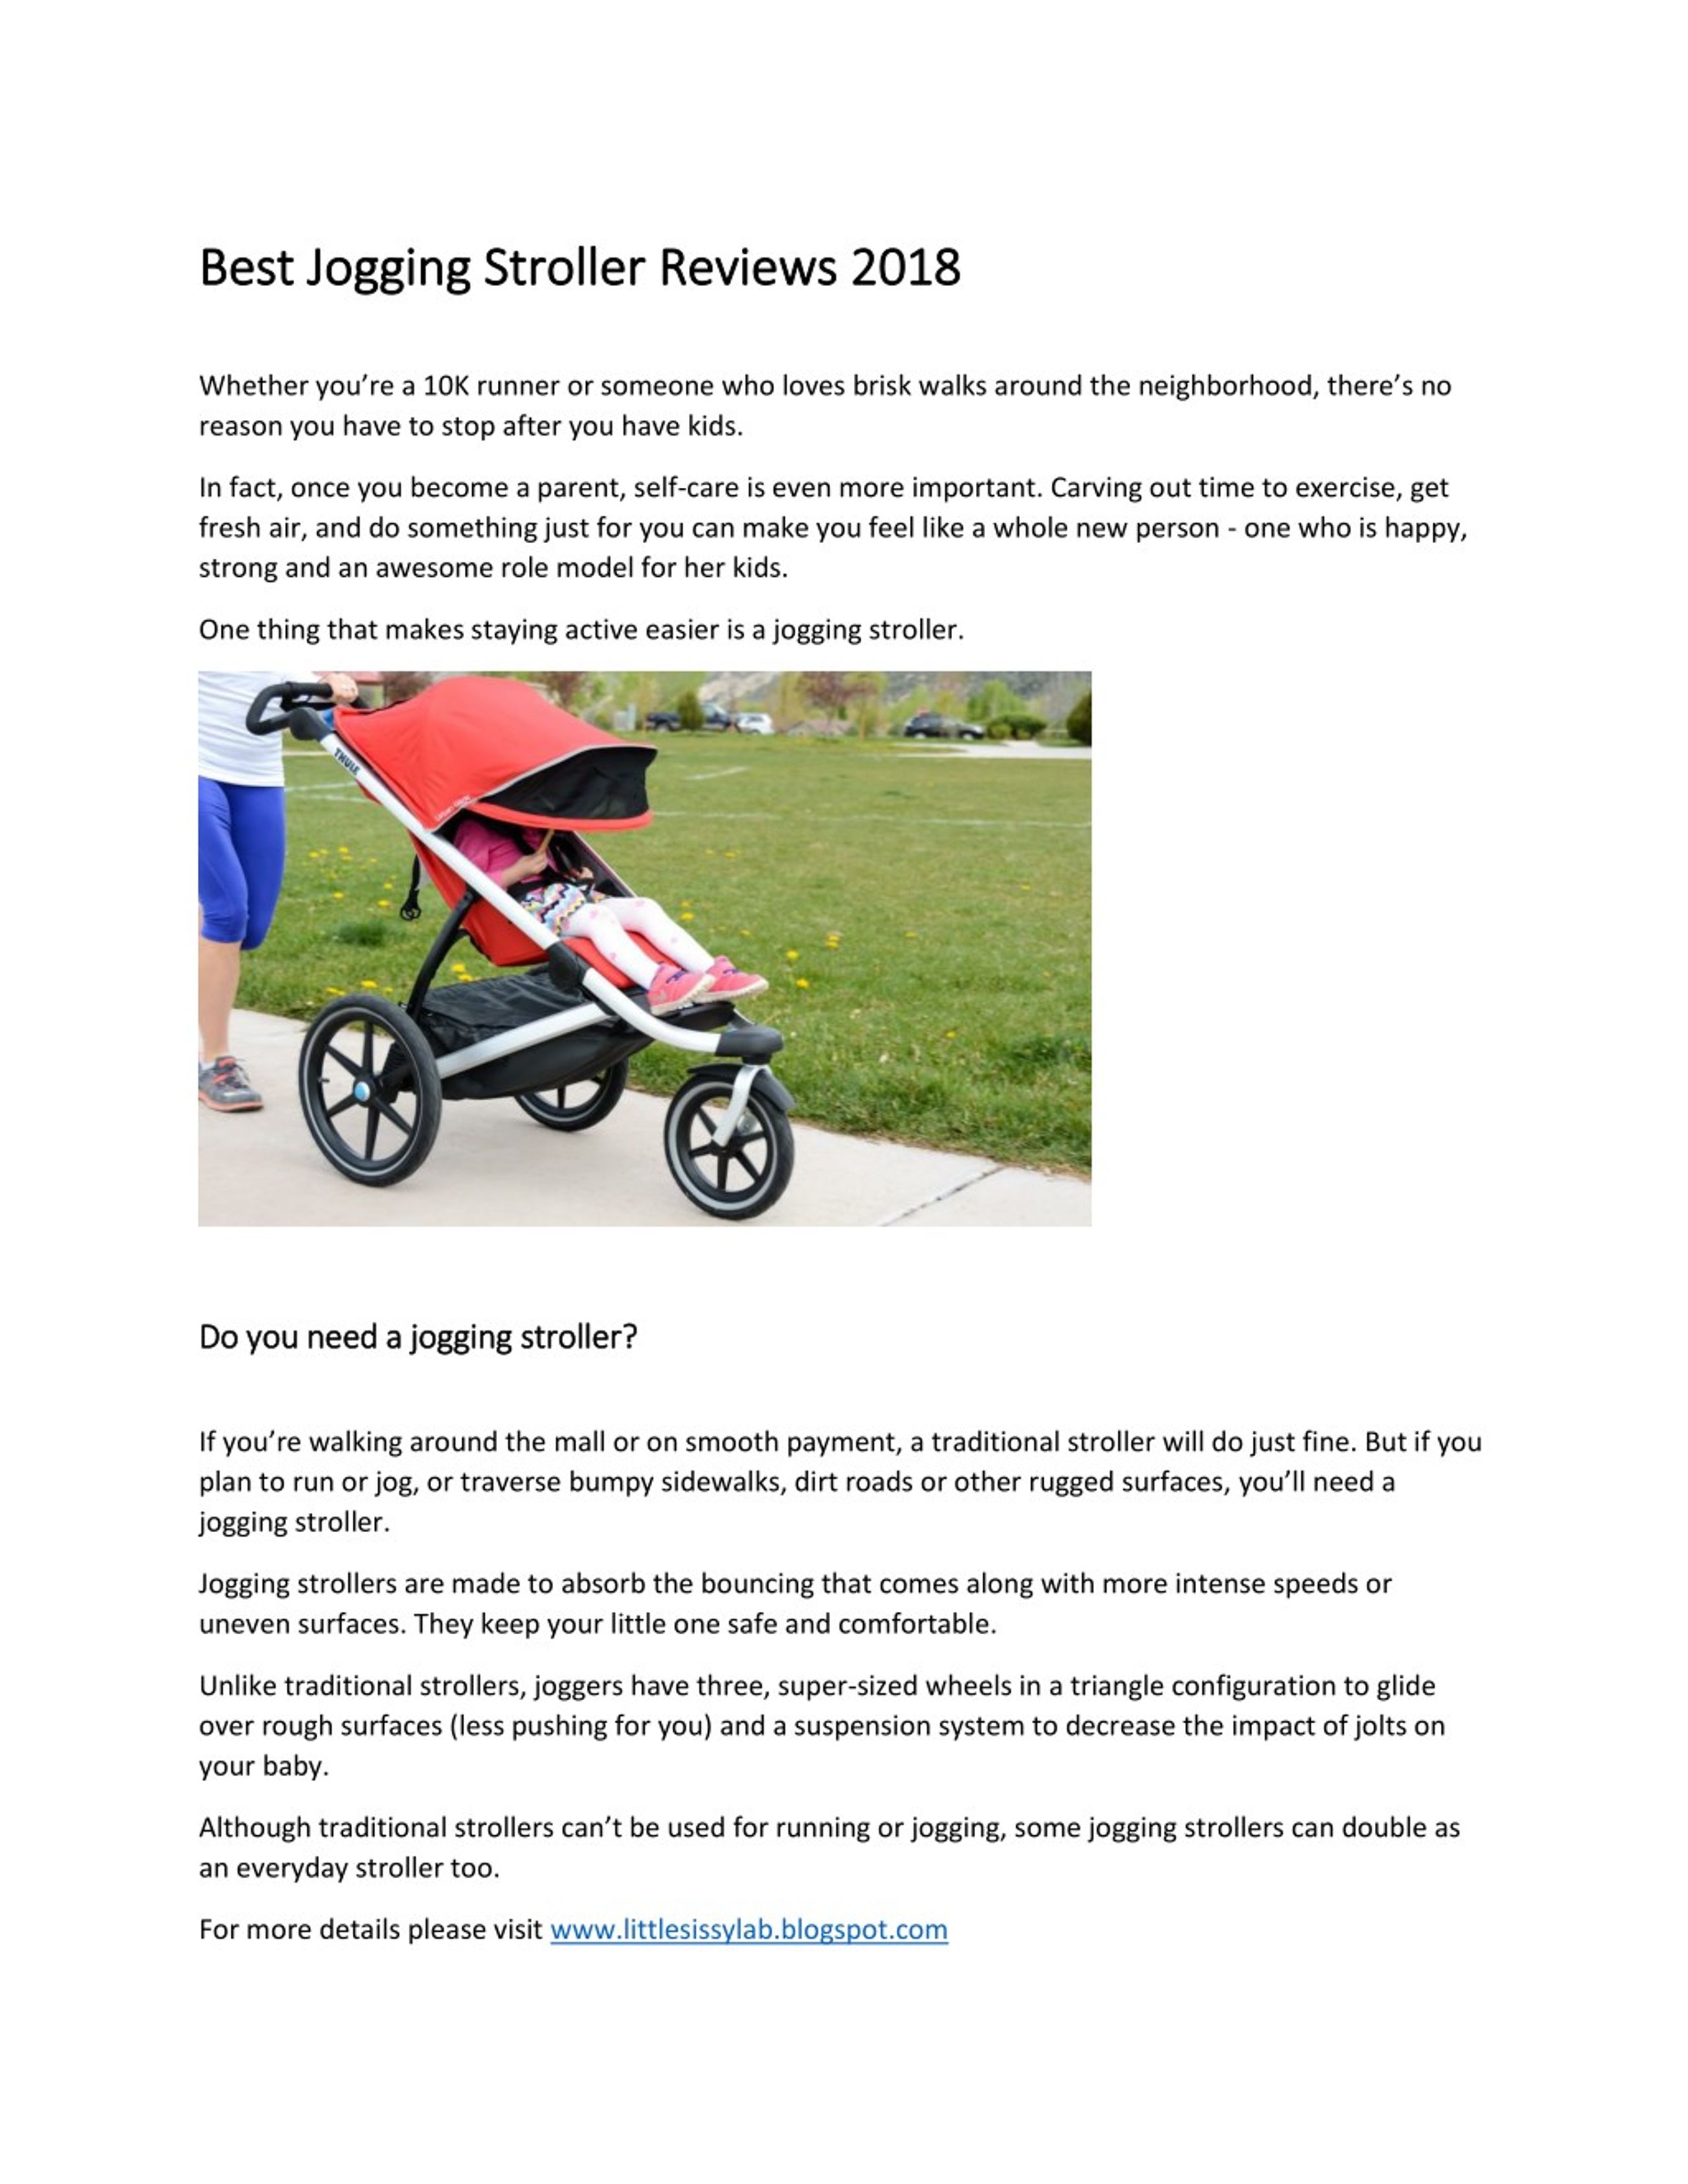 best jogging stroller for gravel roads